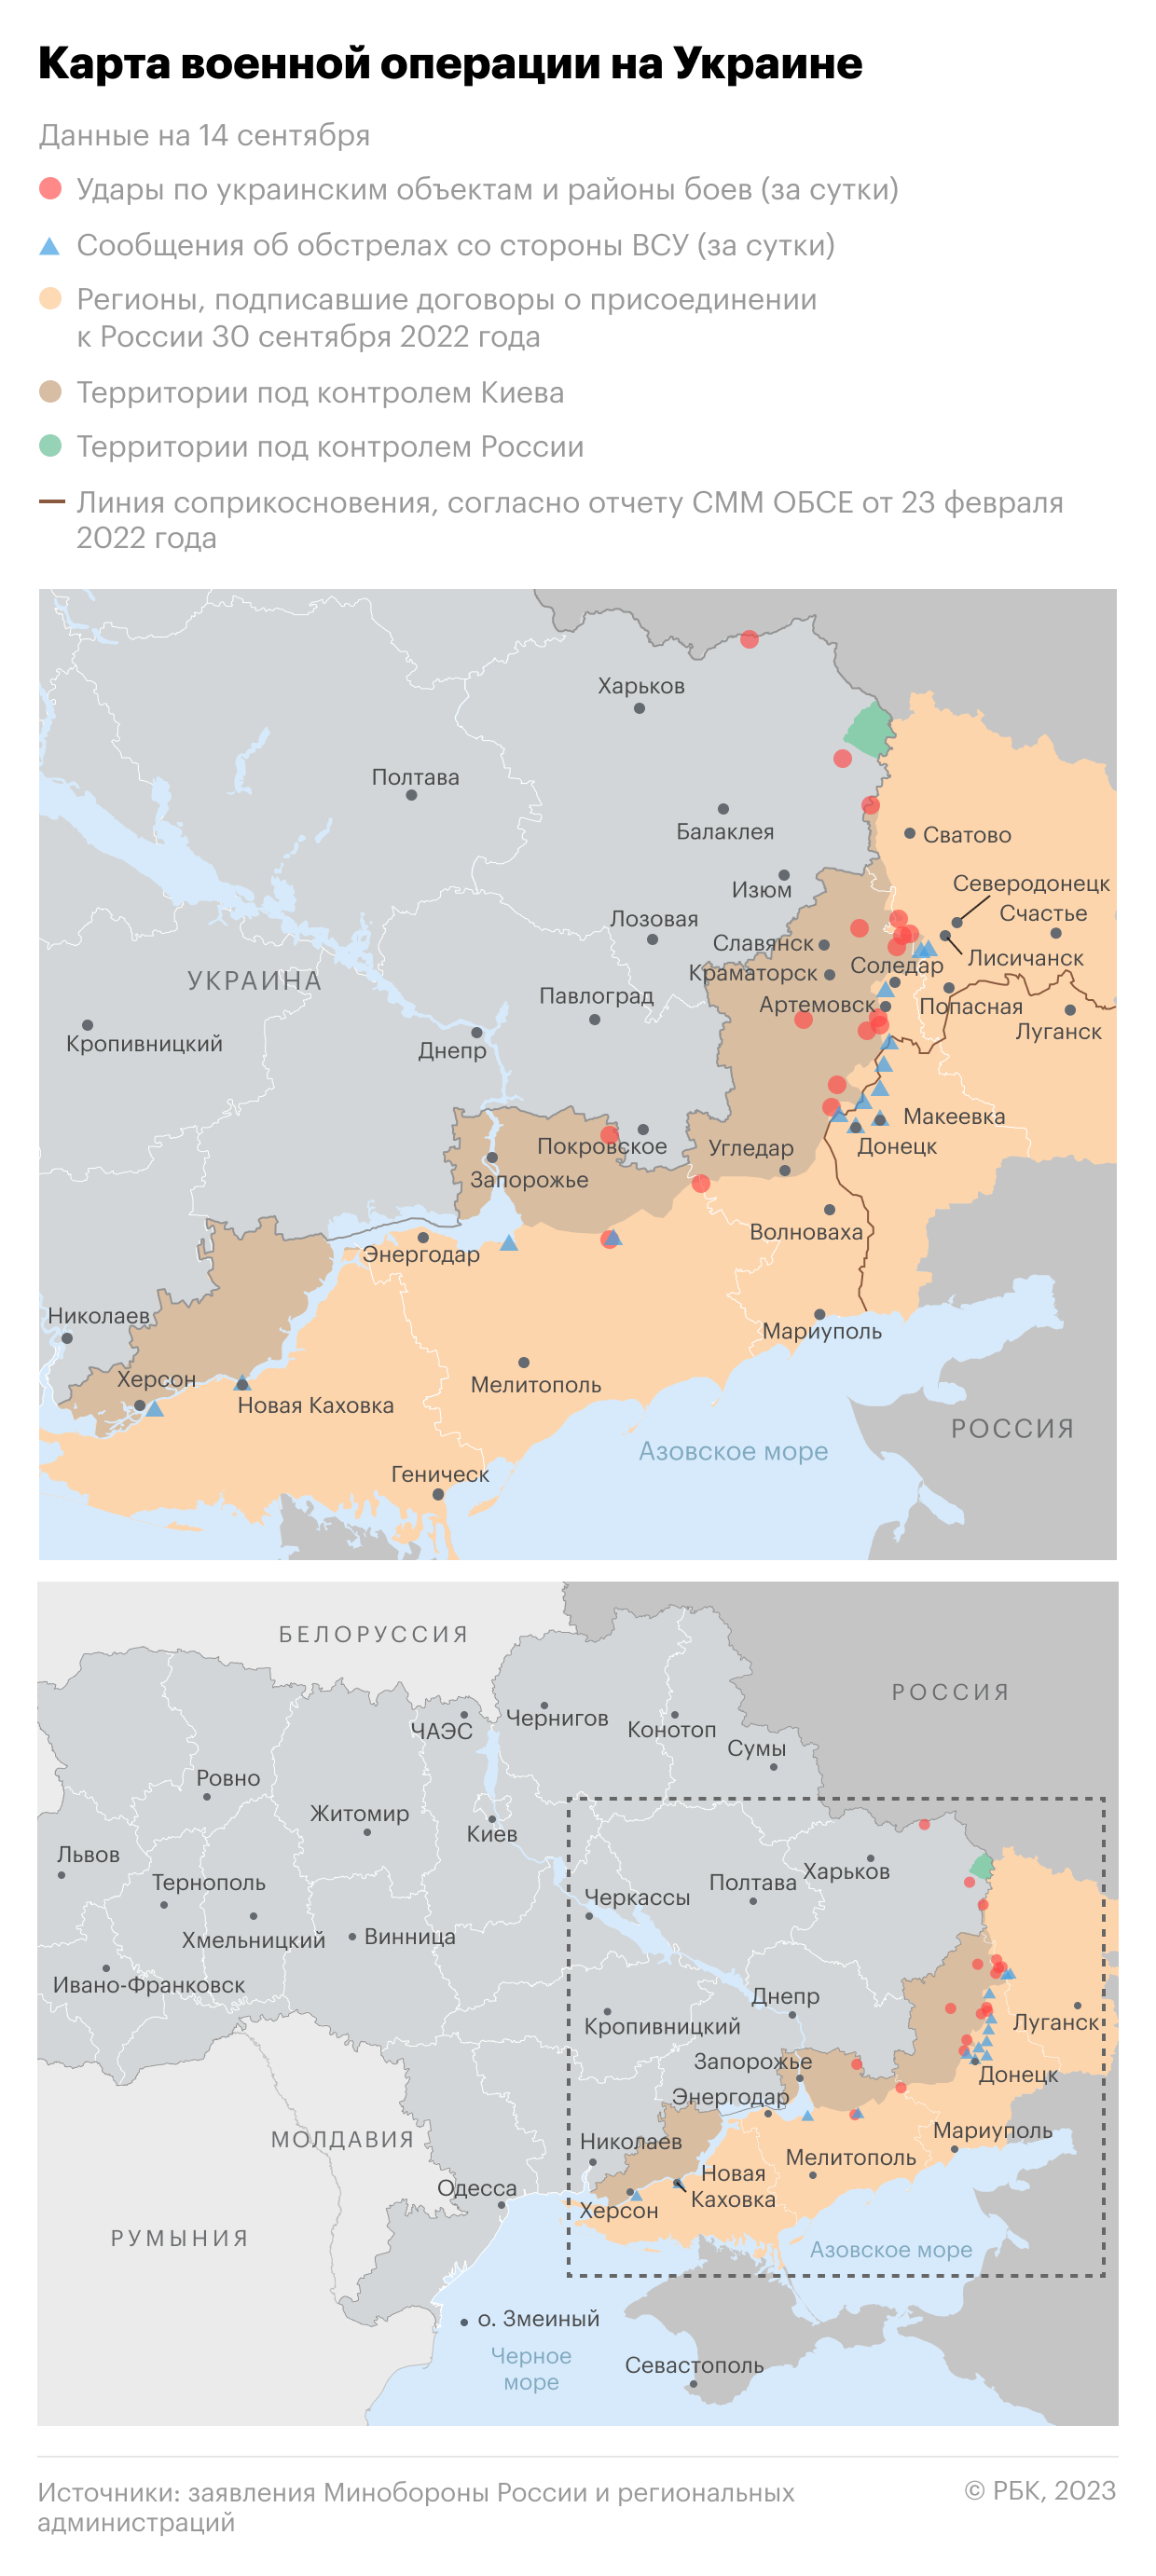 Военная операция на Украине. Карта на 14 сентября